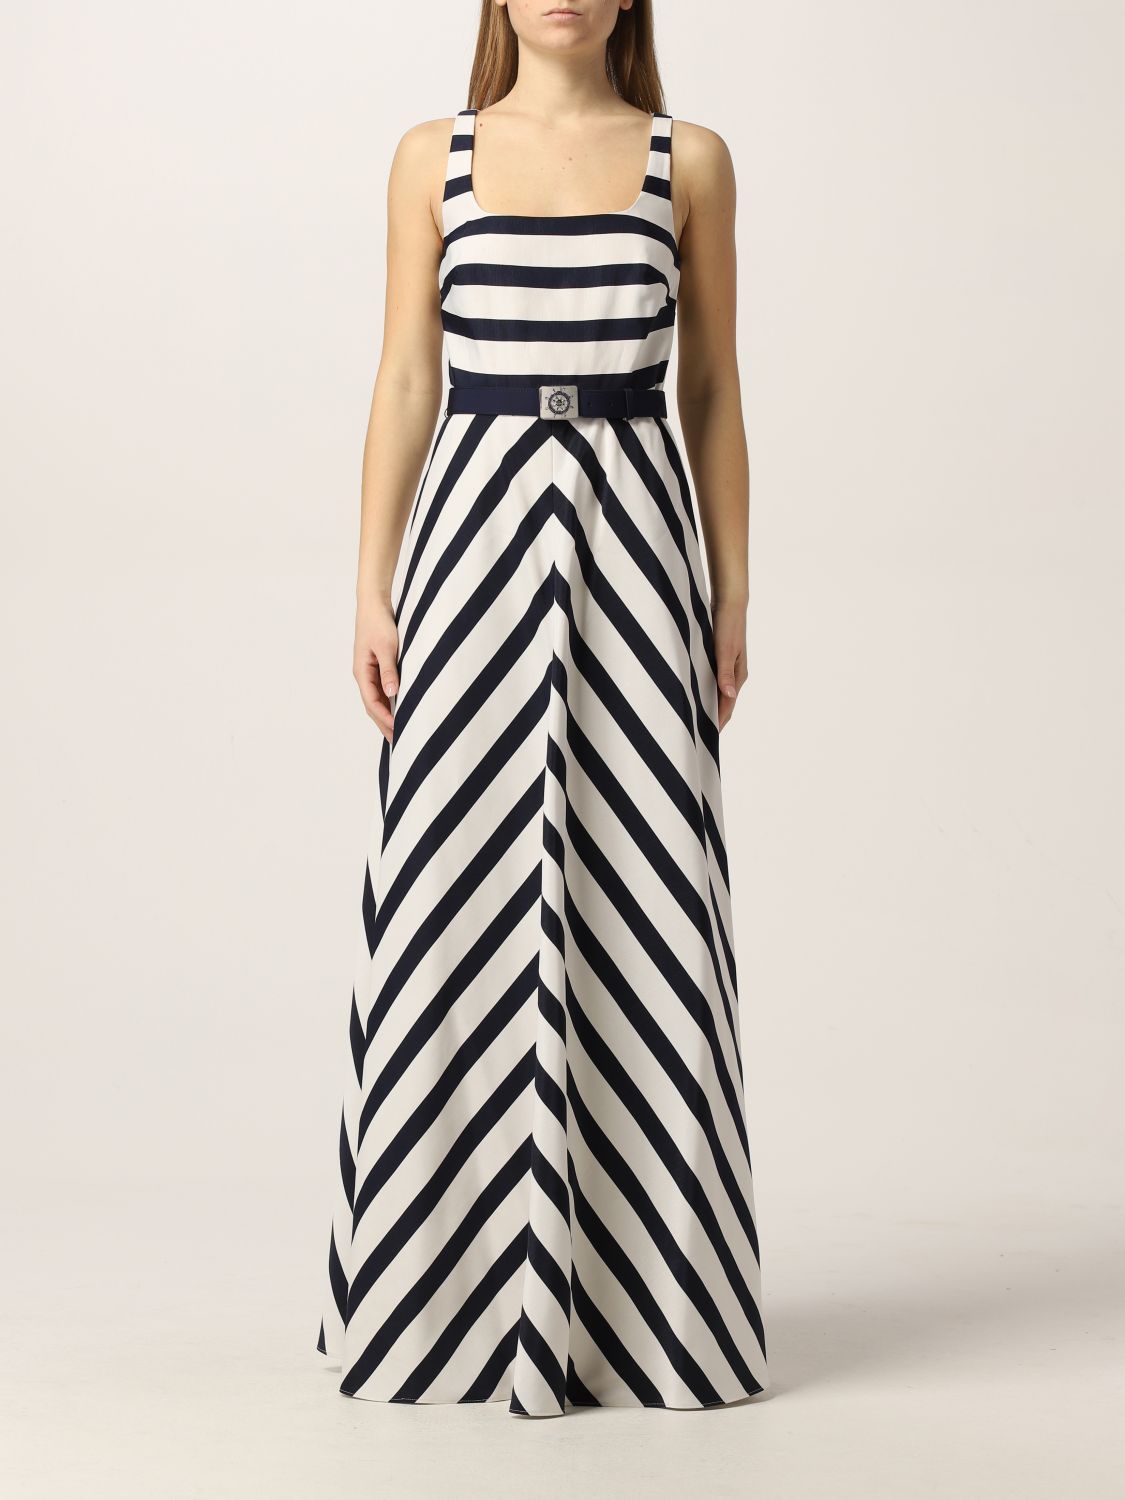 LAUREN RALPH LAUREN: Long striped dress ...